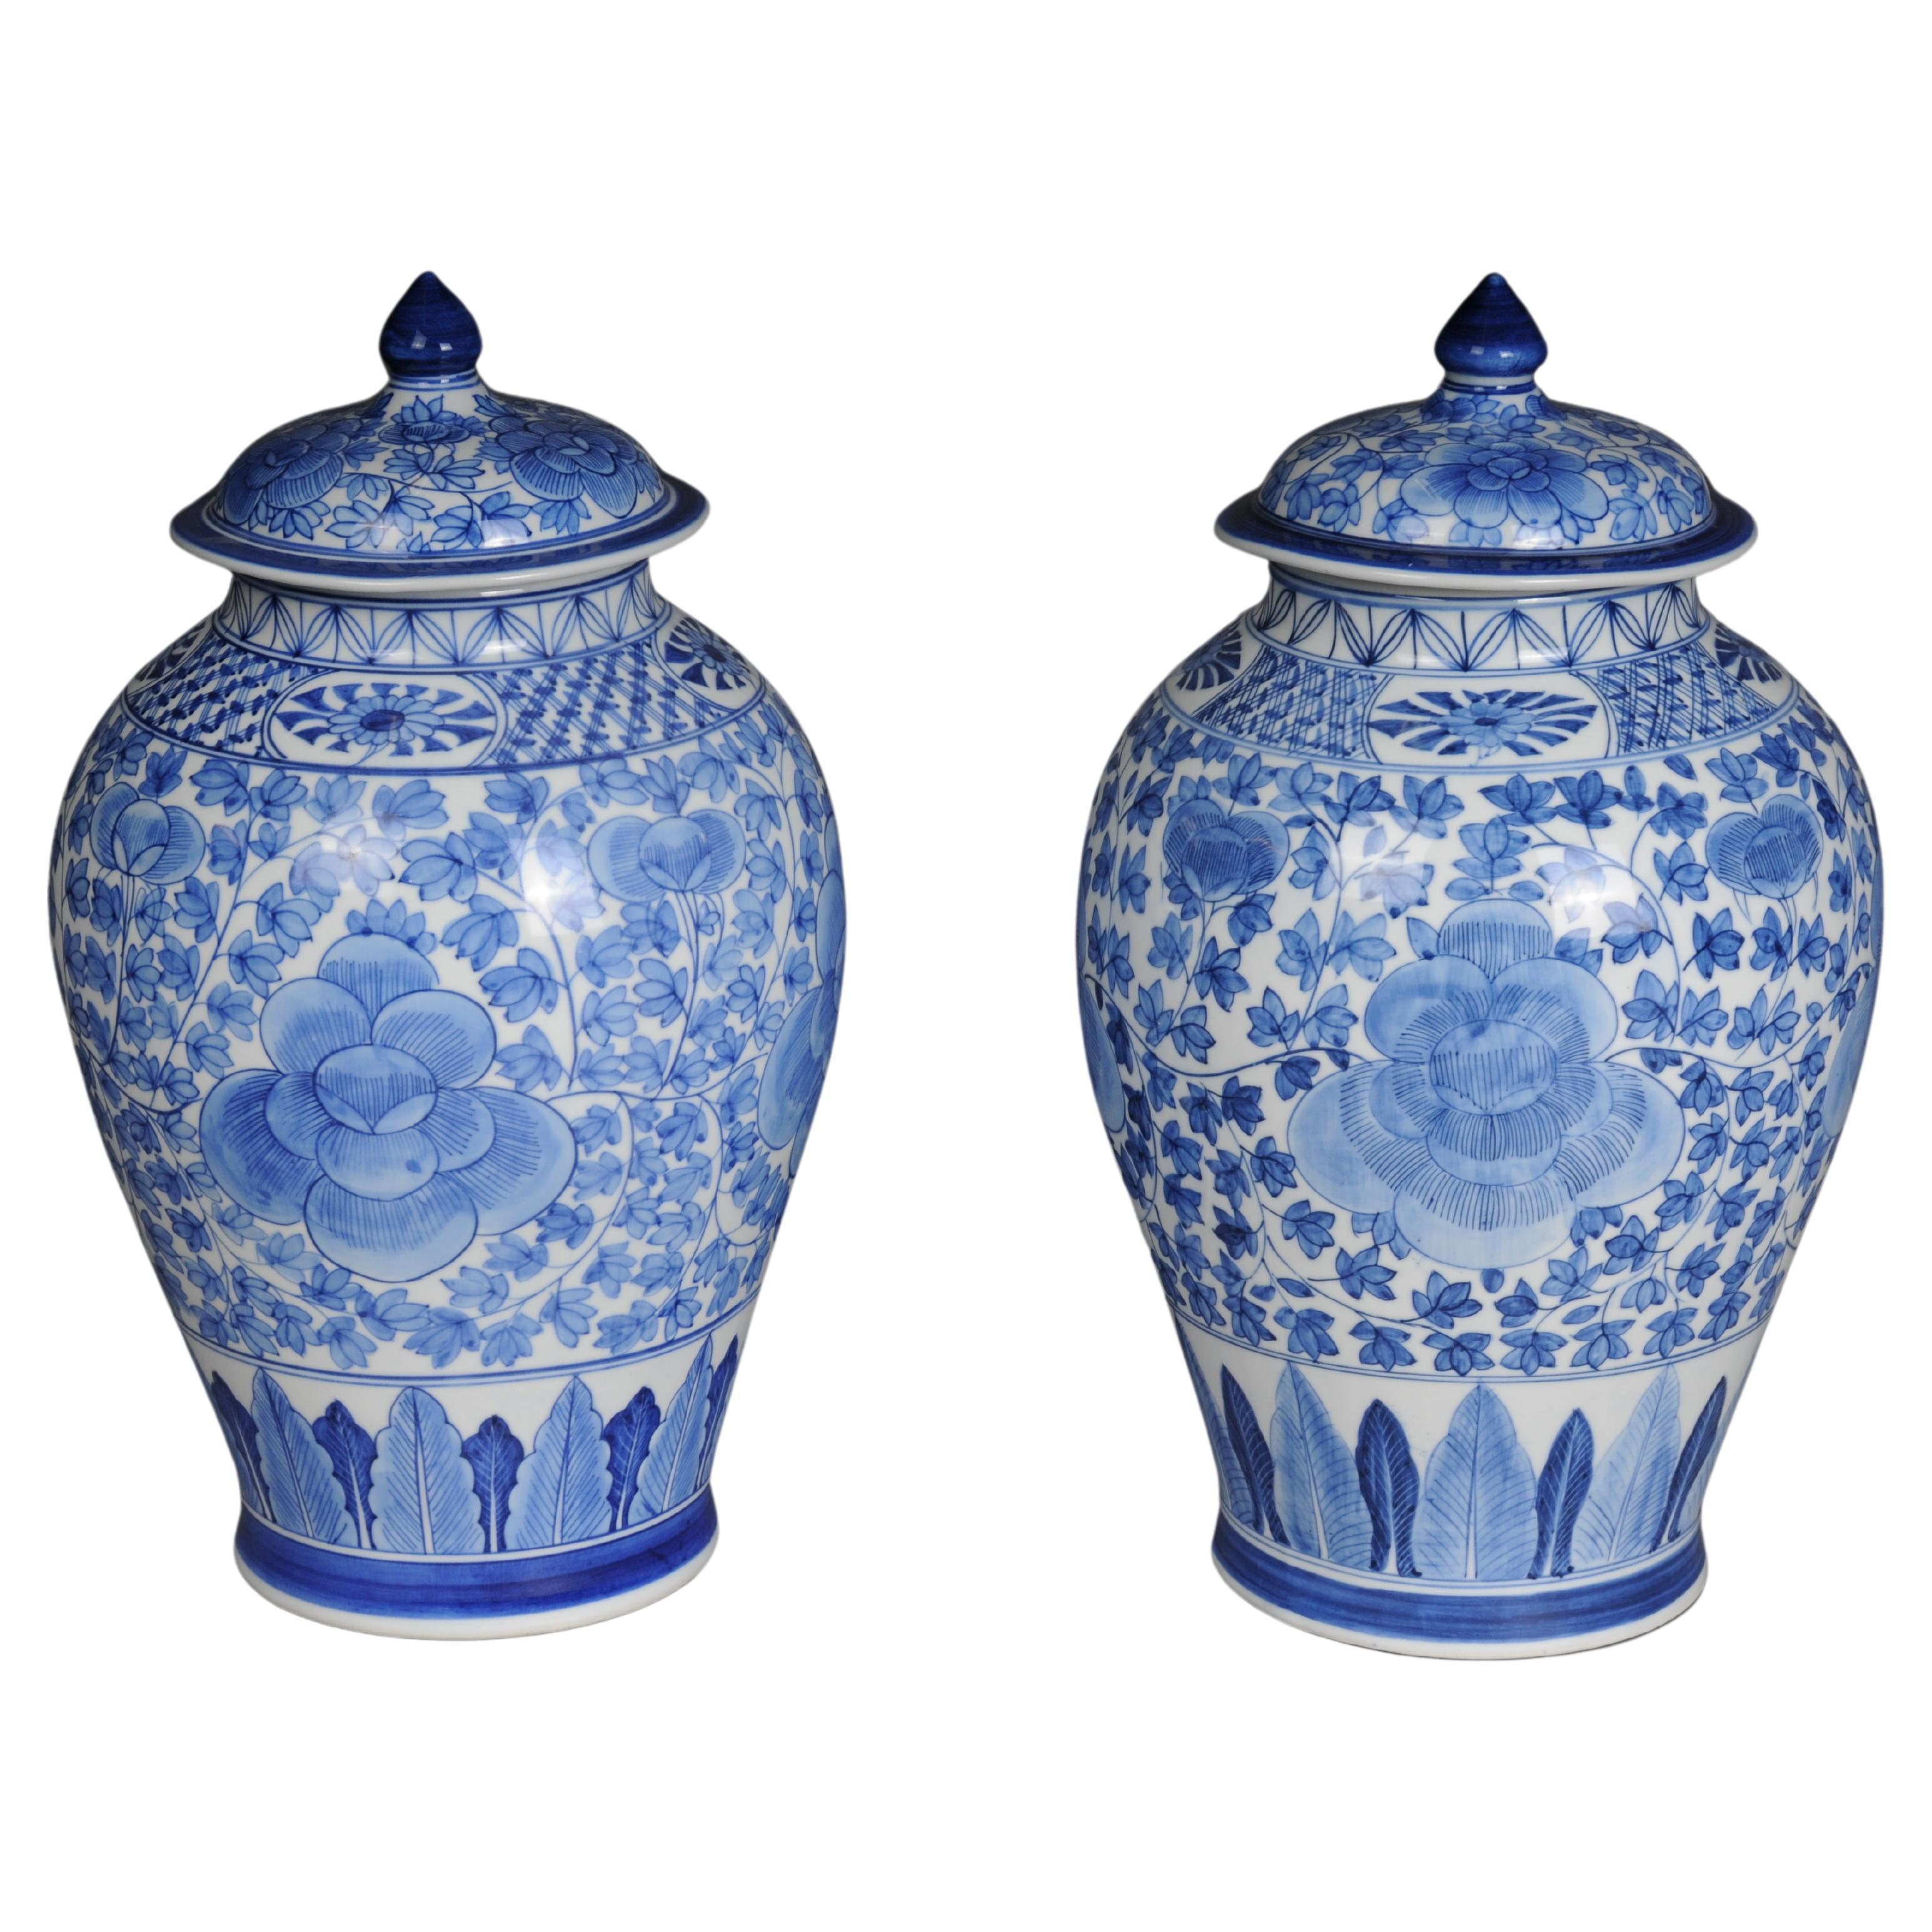 Pair of Asian lidded vases, porcelain, 20th century.